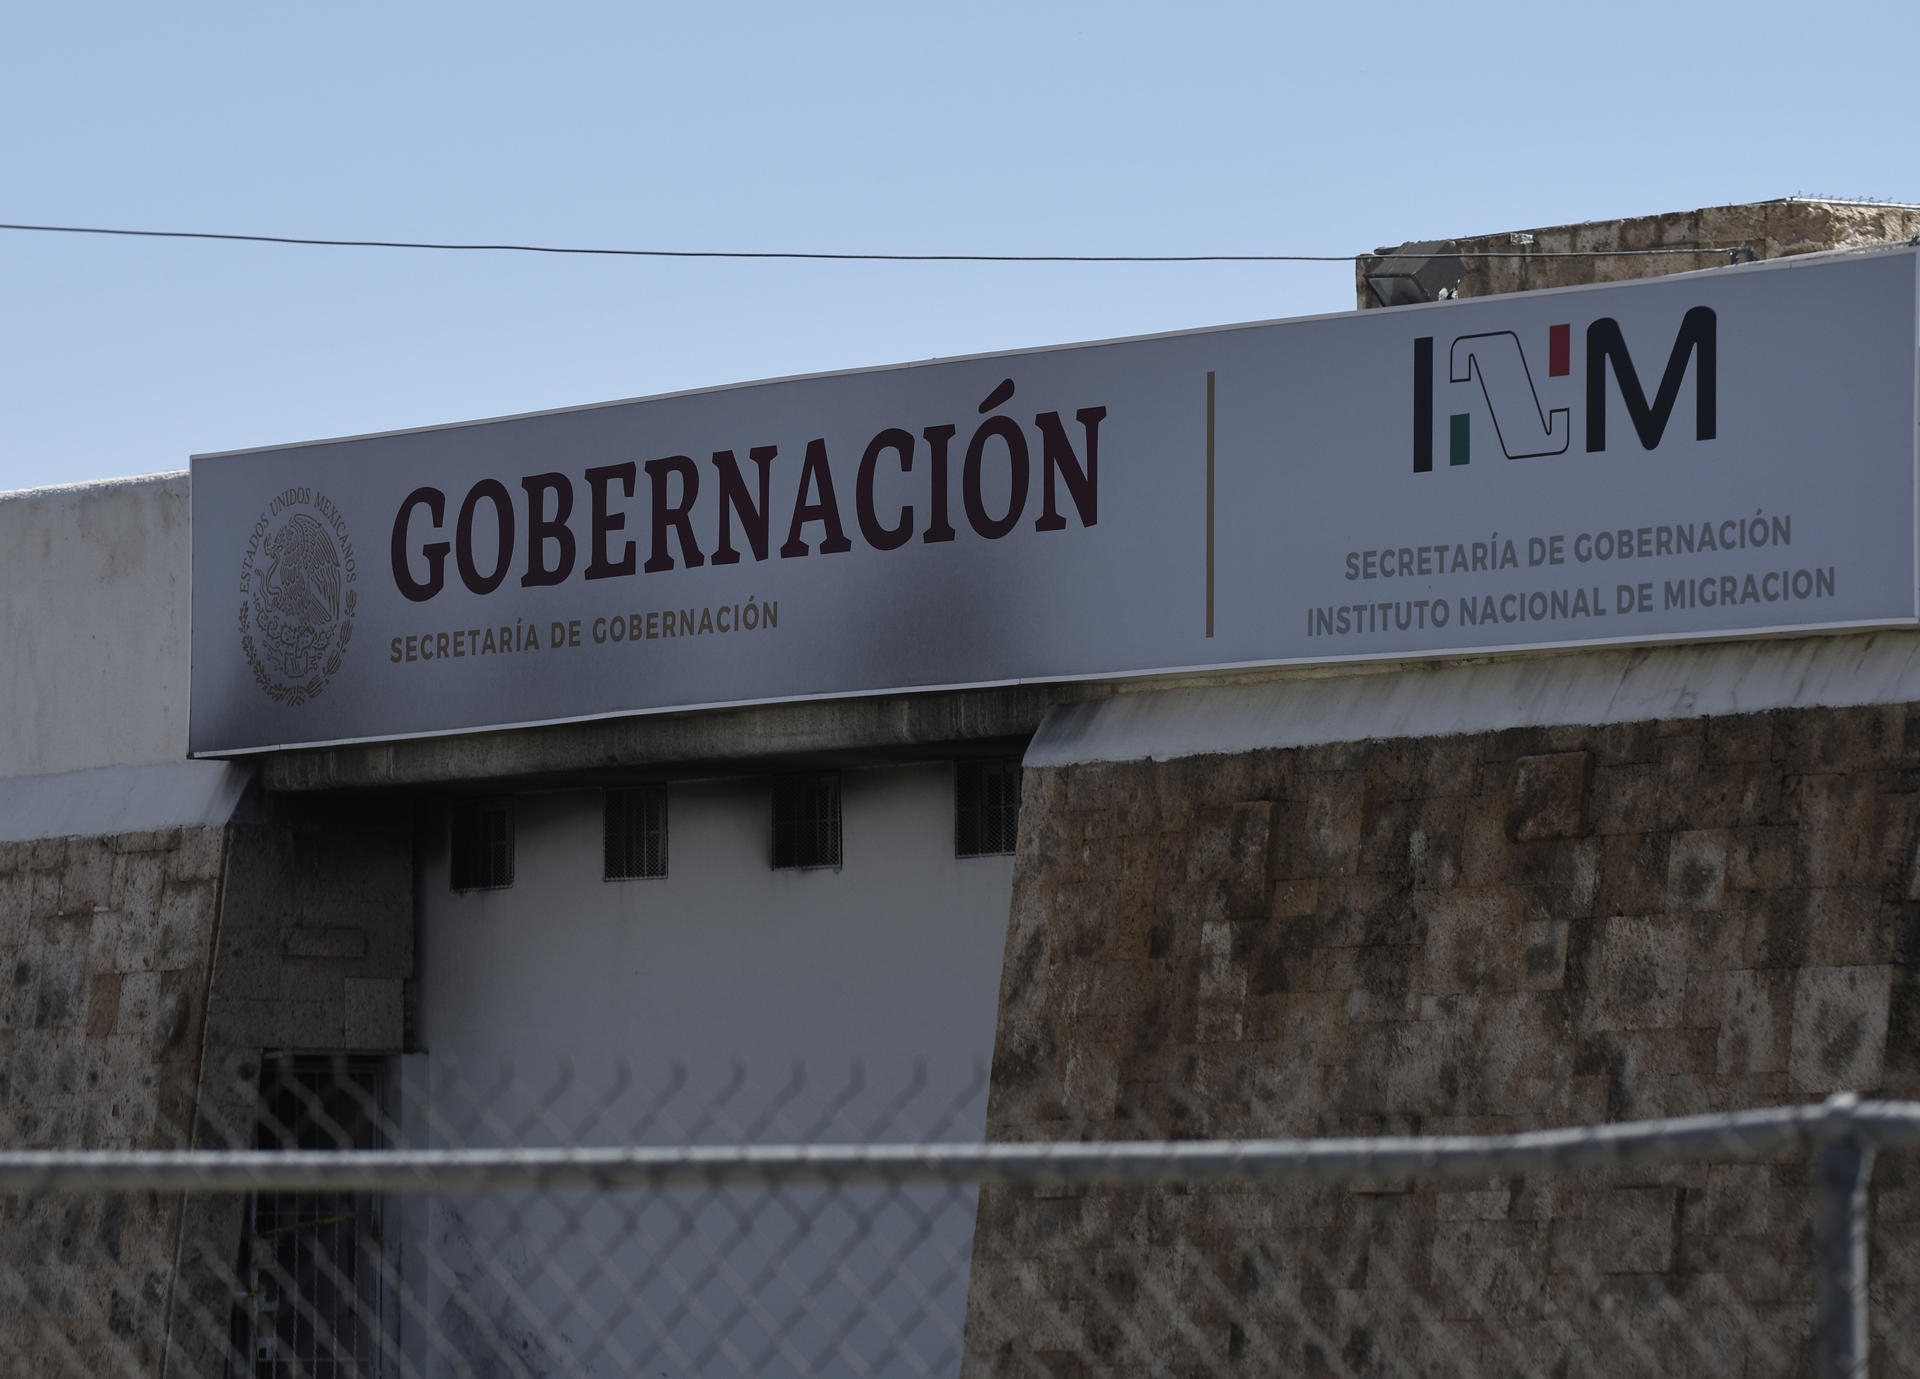 Fotografía de la fachada de la estación del Instituto Nacional de Migración (INM), ho, en la fronteriza Ciudad Juárez, Chihuahua (México). EFE/Luis Torres